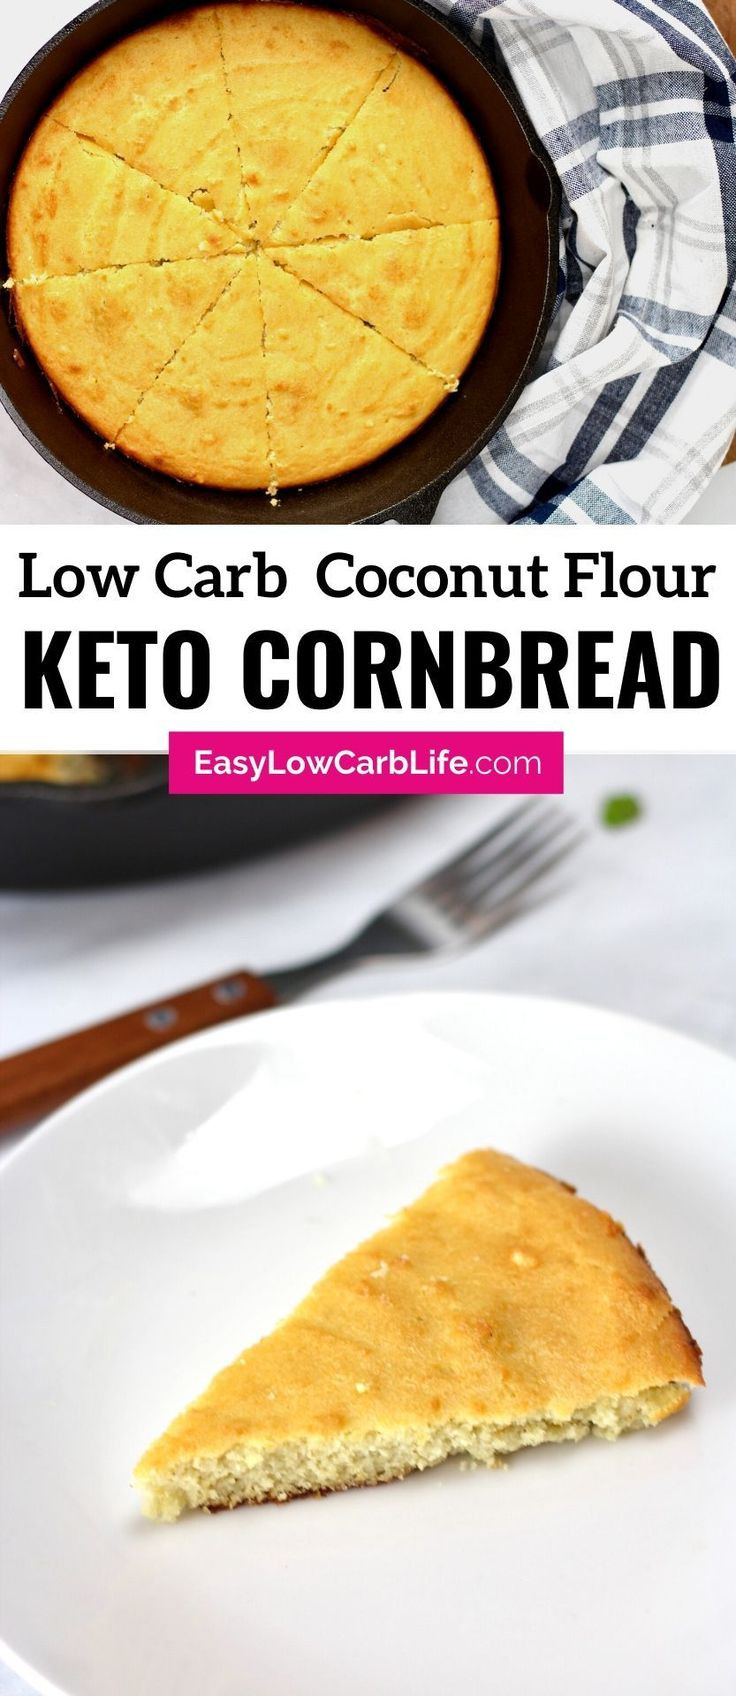 Keto Cornbread Almond Flour
 Keto Low Carb Cornbread Recipe in 2020